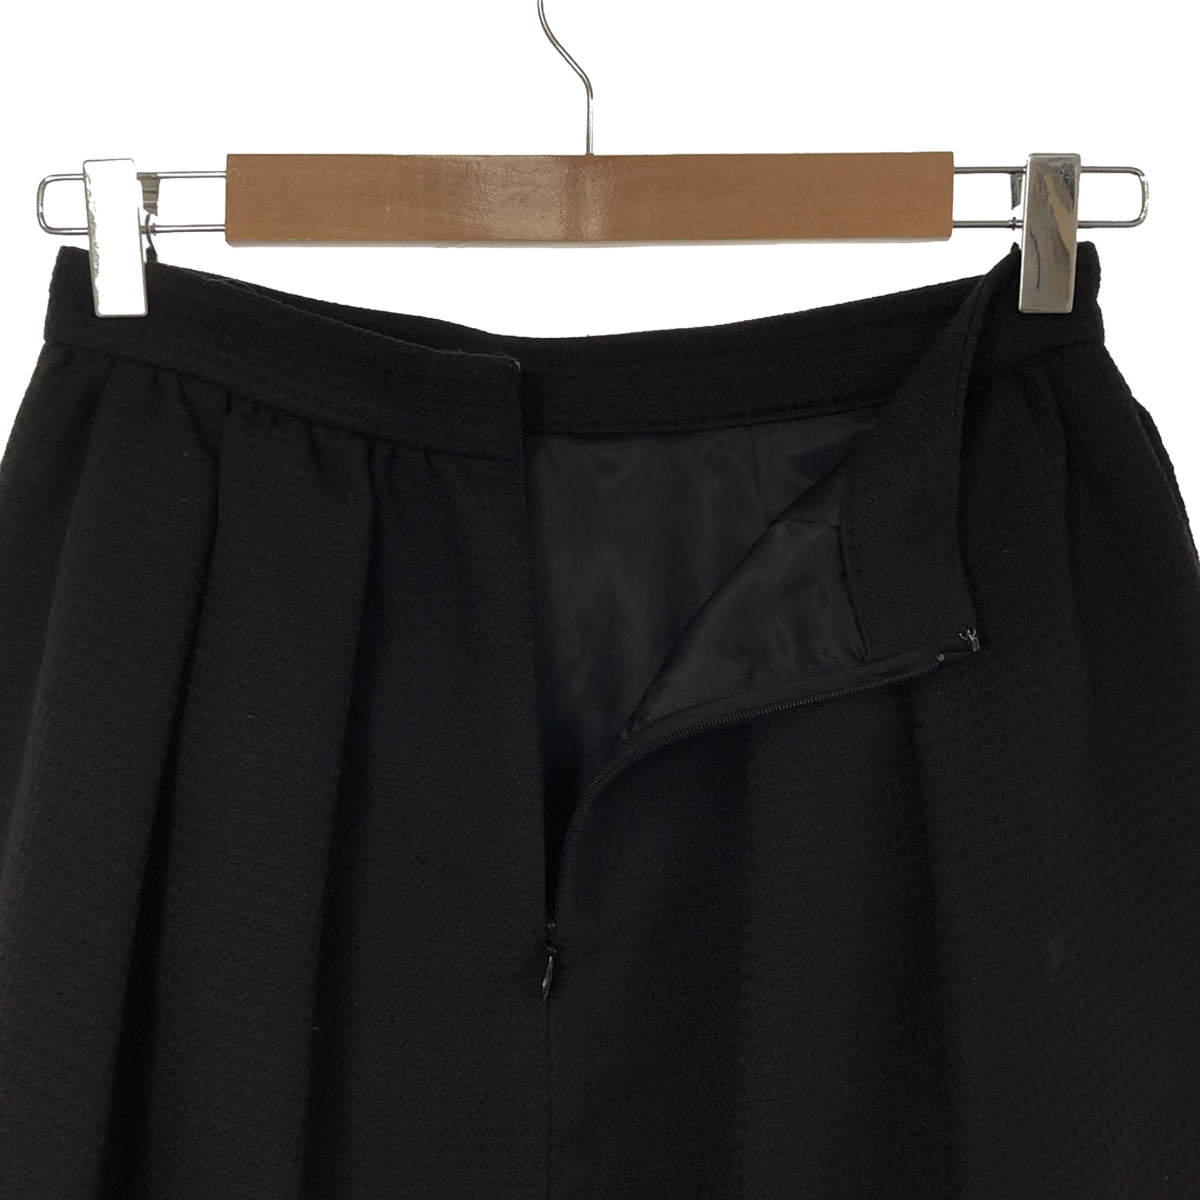 Grace Class / グレースクラス | セットアップ ビジュー付 ジャケット スカート | 36 | ブラック | レディース